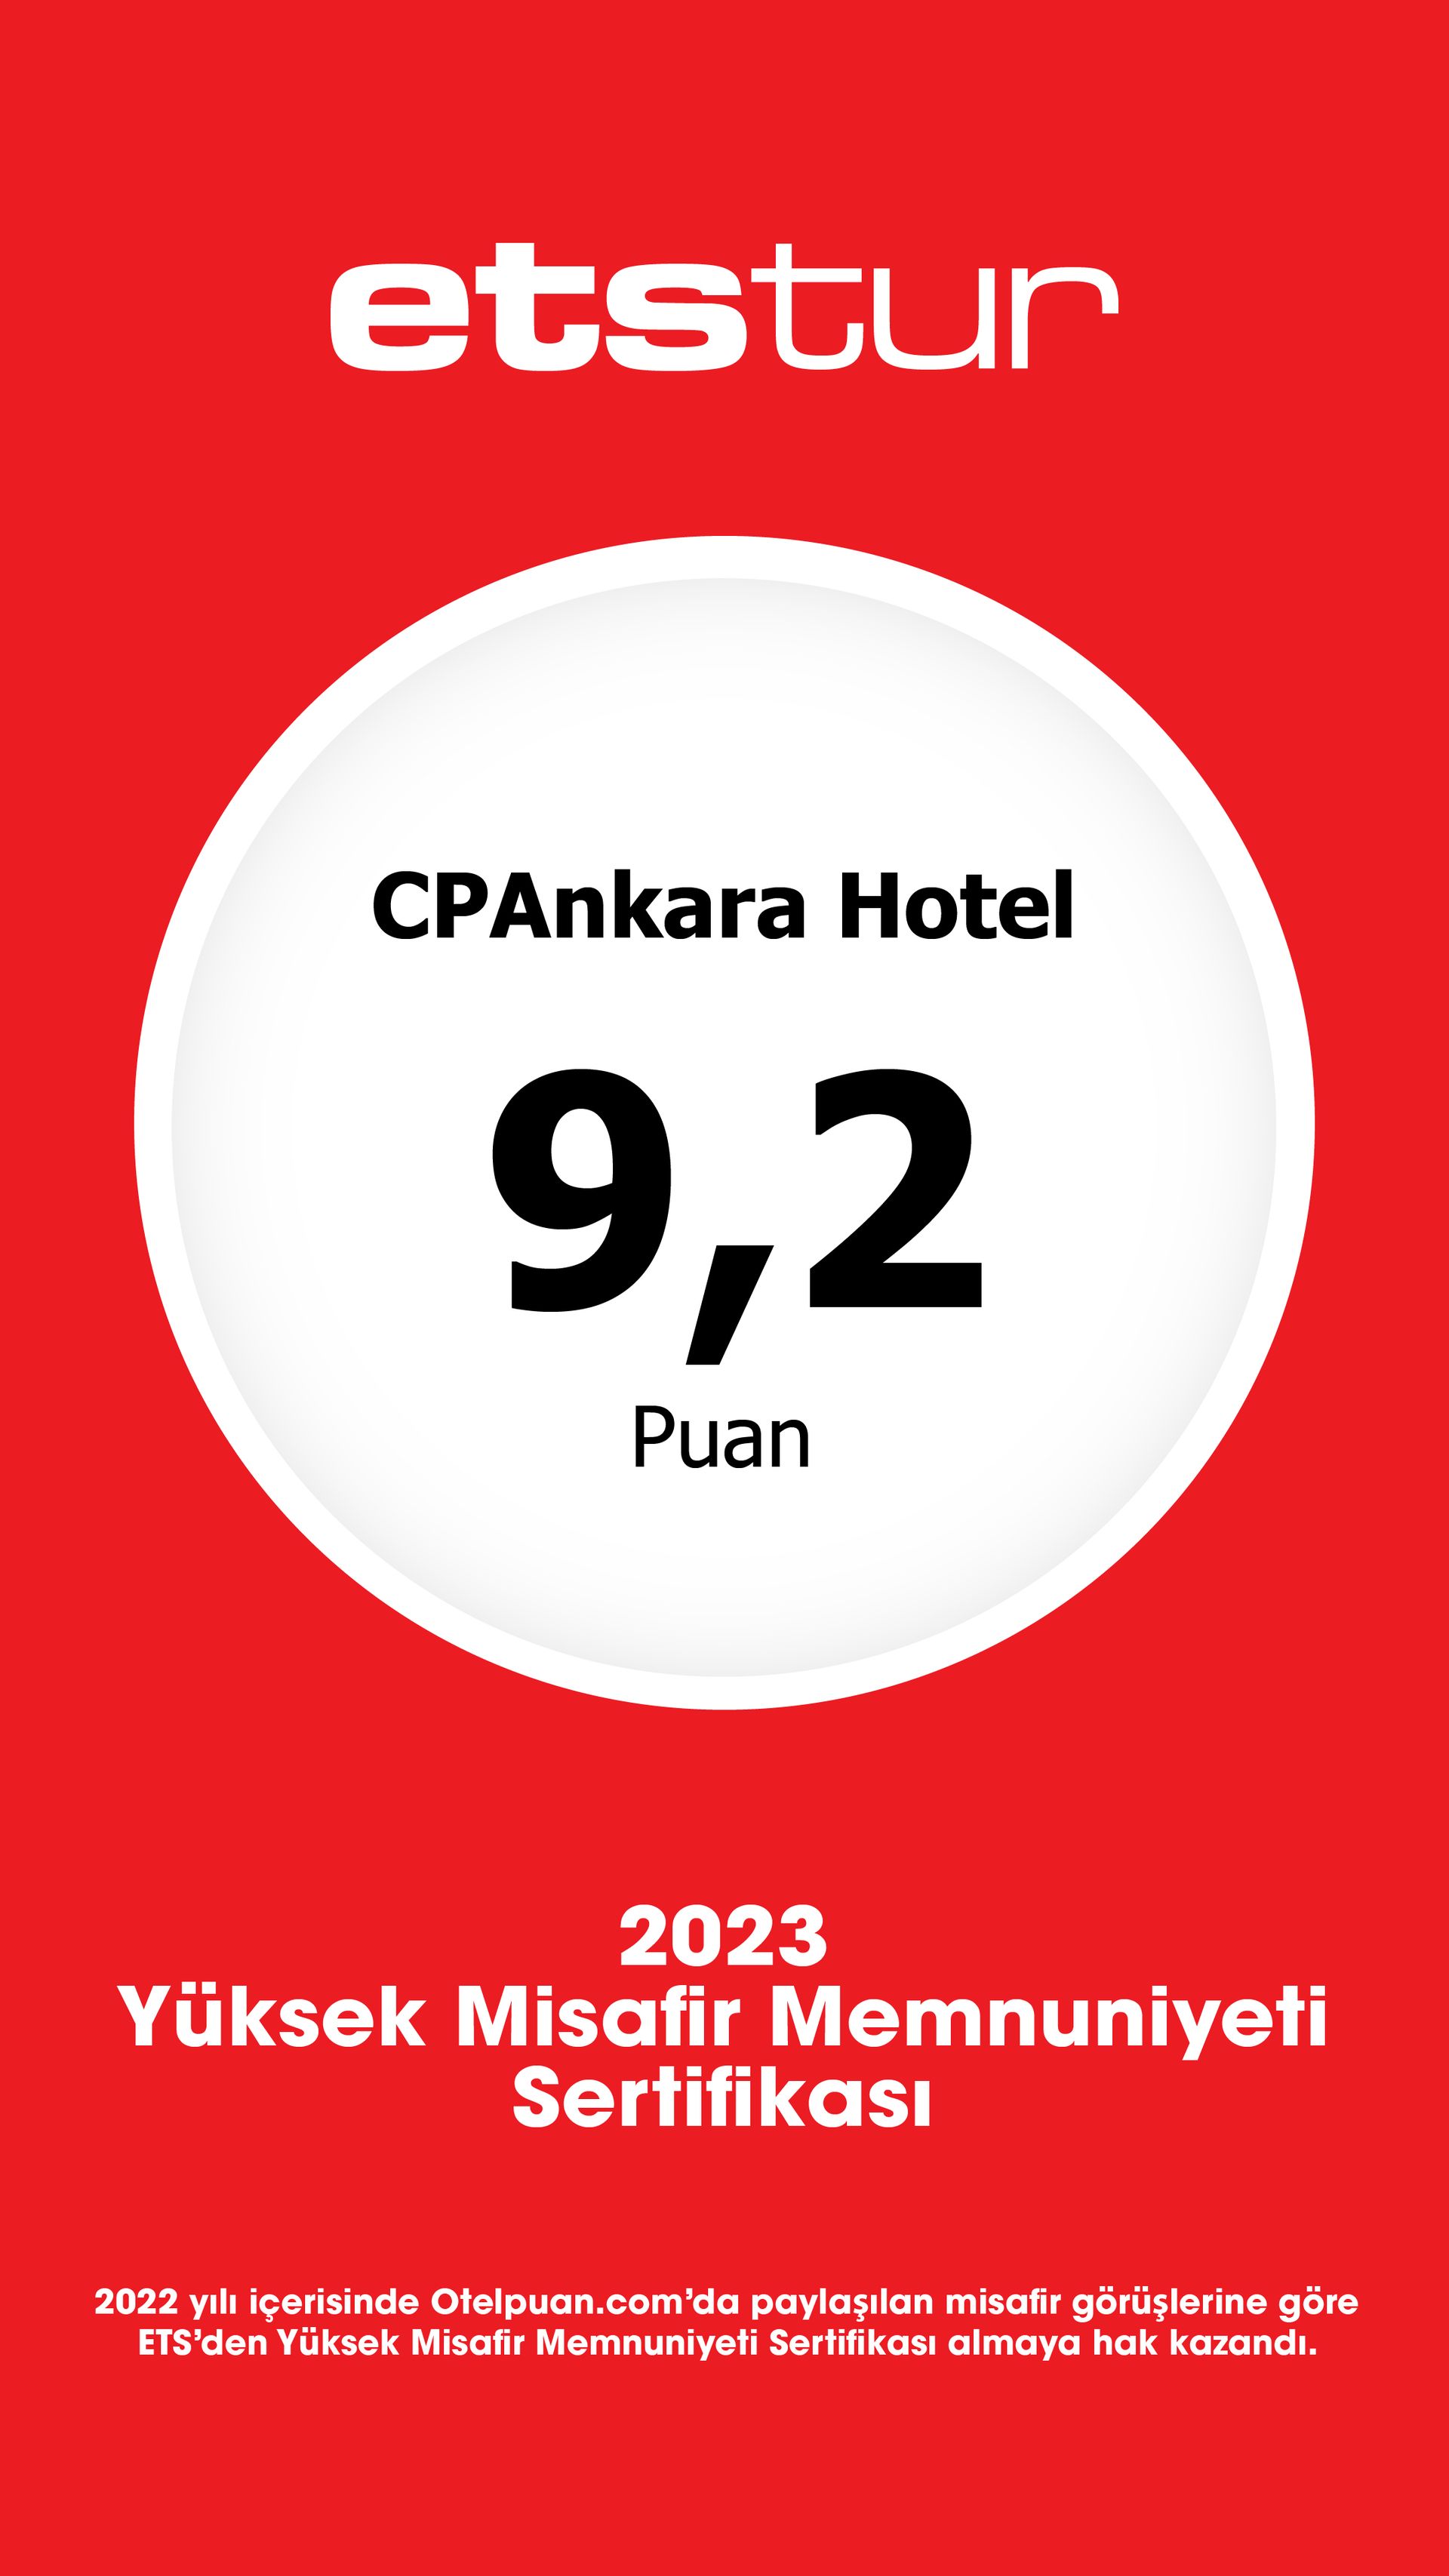 CPAnkara Hotel, etstur 2023 Yüksek Misafir Memnuniyeti Sertifikası